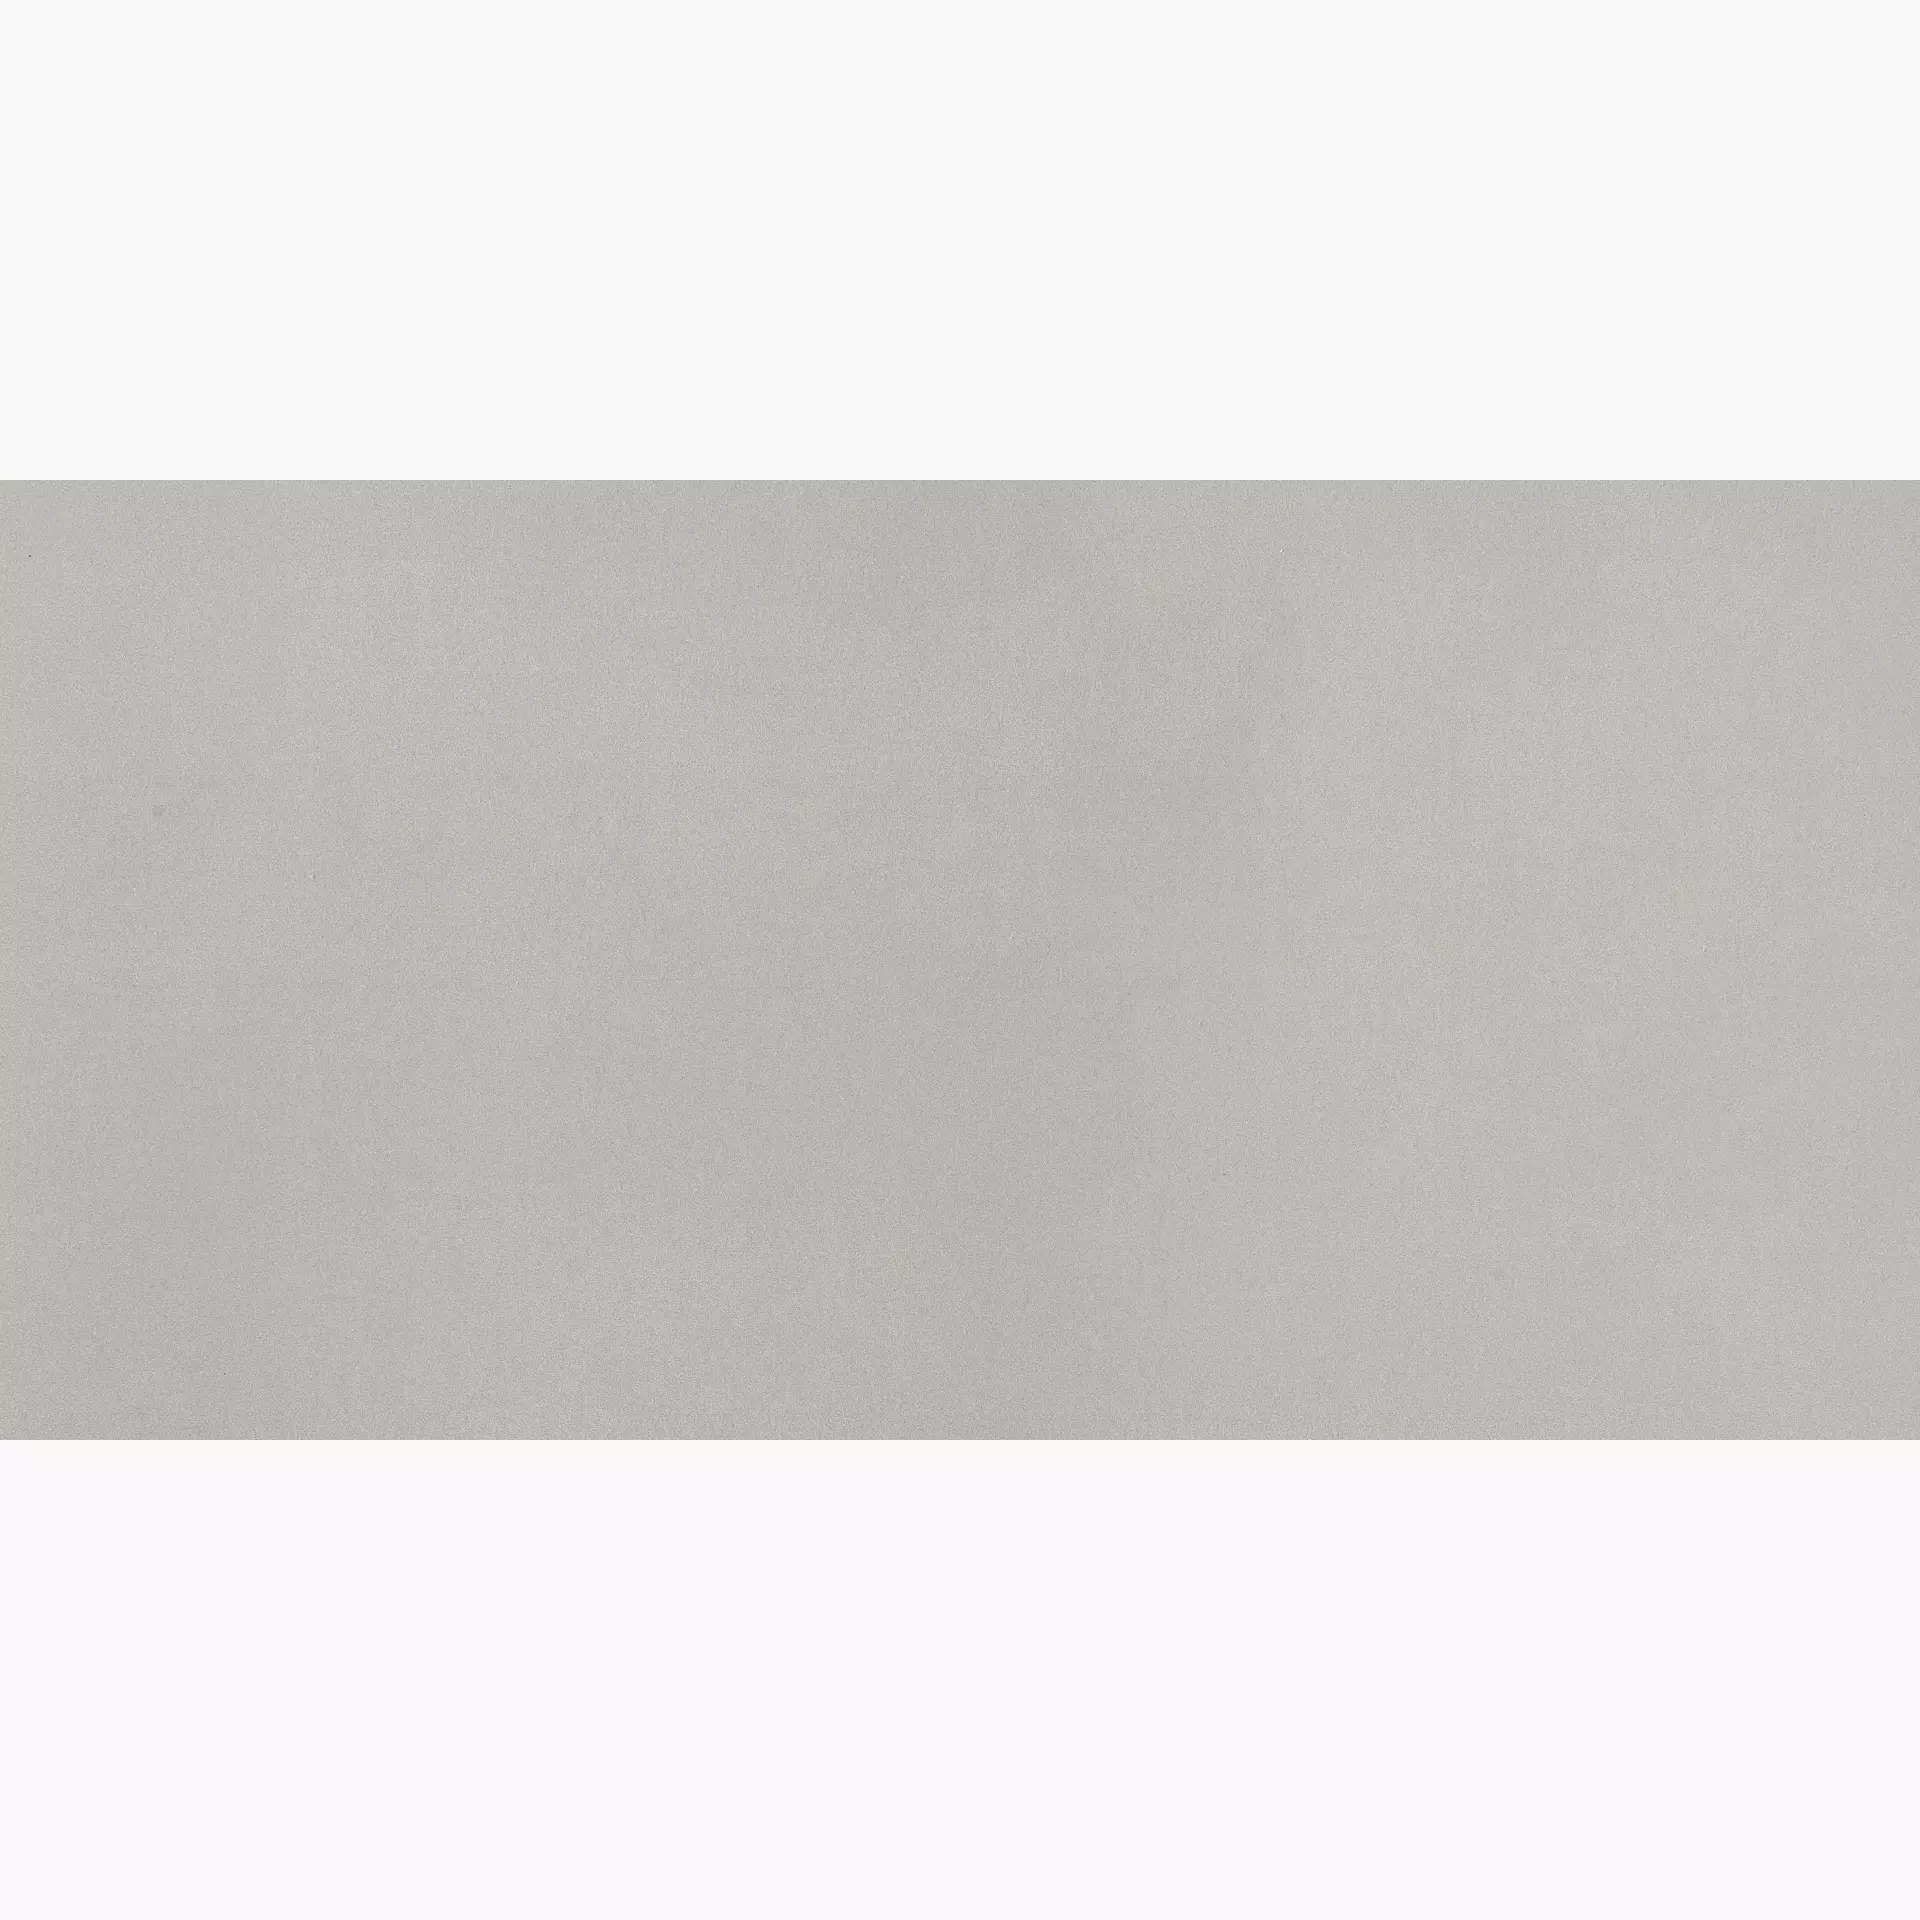 Rak Rhode Island Light Grey Natural – Matt Light Grey A12GRDILLIGM0X5R natur matt 60x120cm rektifiziert 9mm